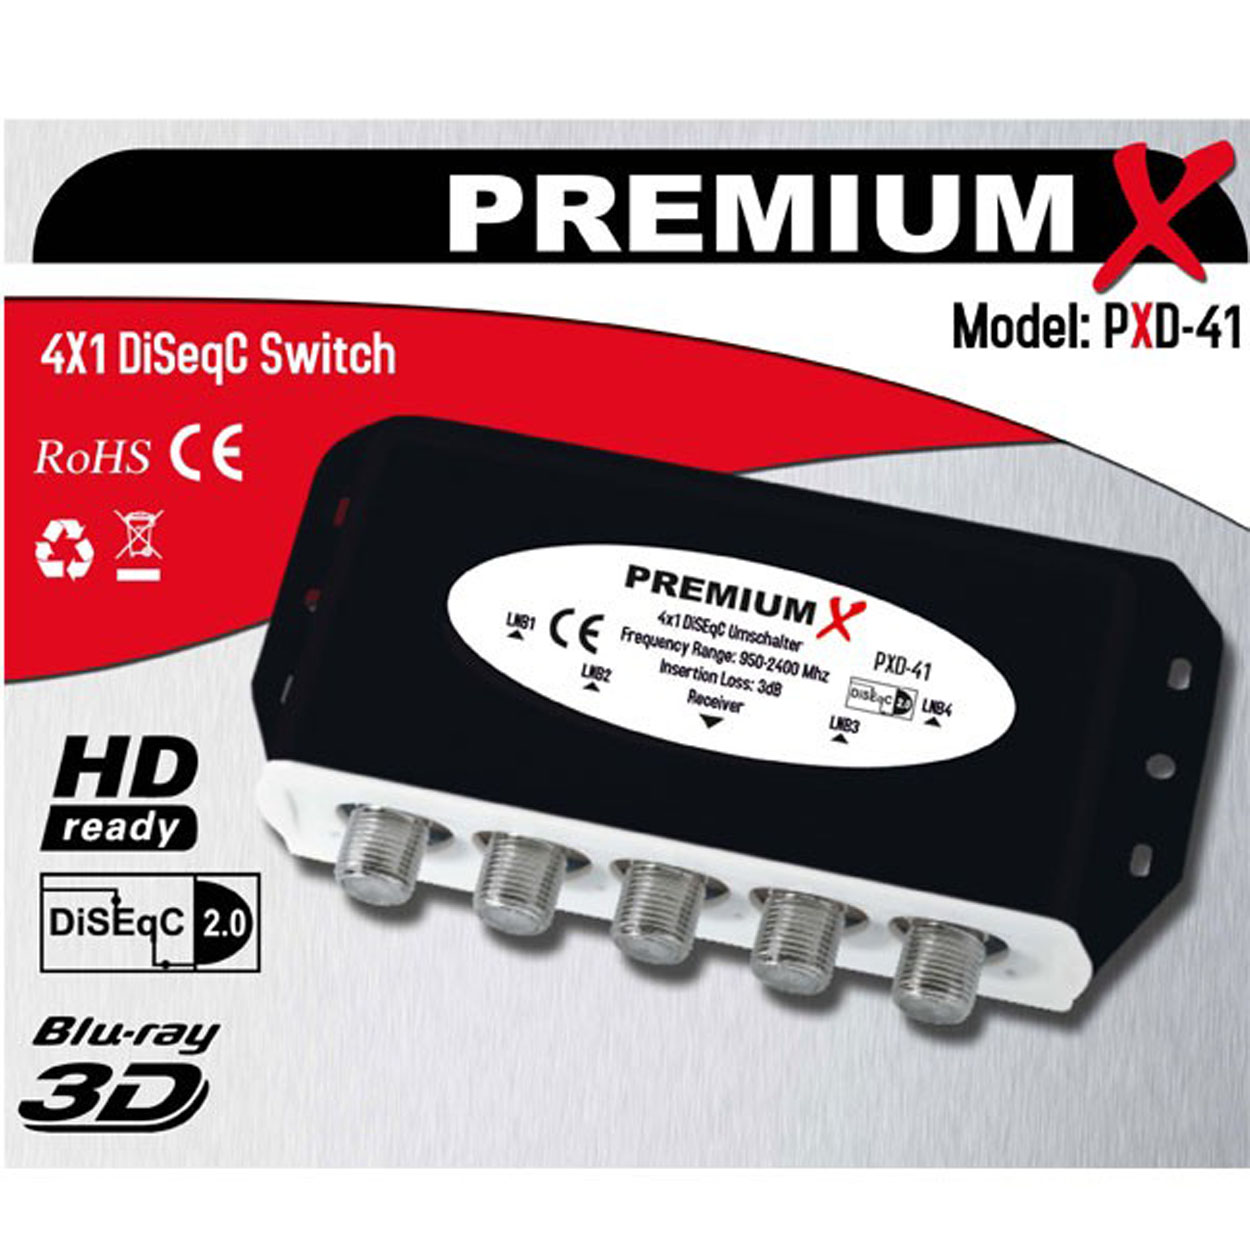 PREMIUMX 2x SAT FullHD 4/1 Switch 2.0 DVB-S2 Sat-Multischalter HDTV DiseqC PXD-41 Umschalter Schalter Wetterschutzgehäuse 4K